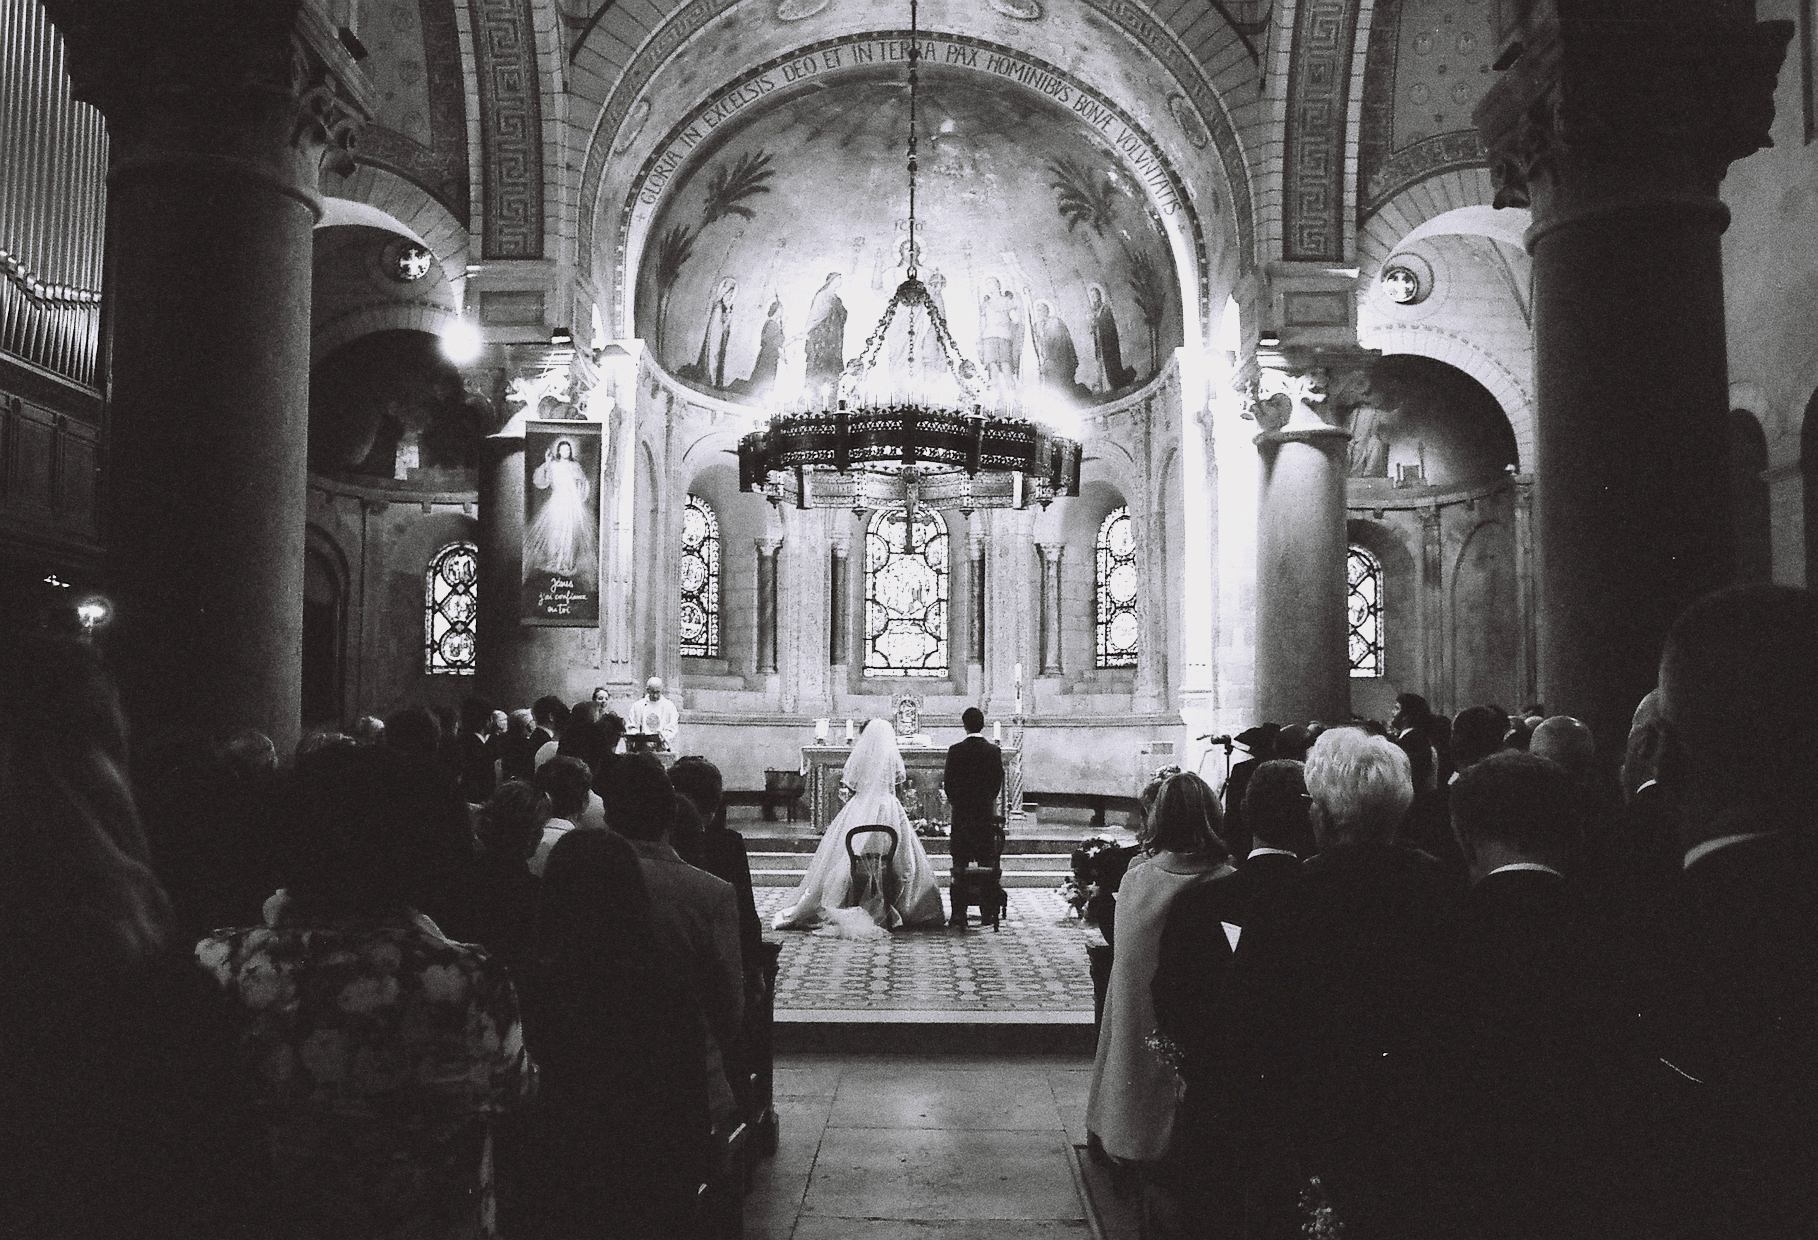 Photographe corrèze. Deux mariés en costume traditionnel sont à l'autel d'une basilique Lyonnaise. Prise depuis le fond de l'église, la photo présente deux masses d'invités de chaque côté de l'allée centrale, guidant le regard vers les mariés debout au milieu du transept. Devant et au dessus d'eux, le décors grandiose de la basilique se dévoile en tons clairs illuminant la scène. Le grain de la photo argentique, en noir et blanc, est perceptible.